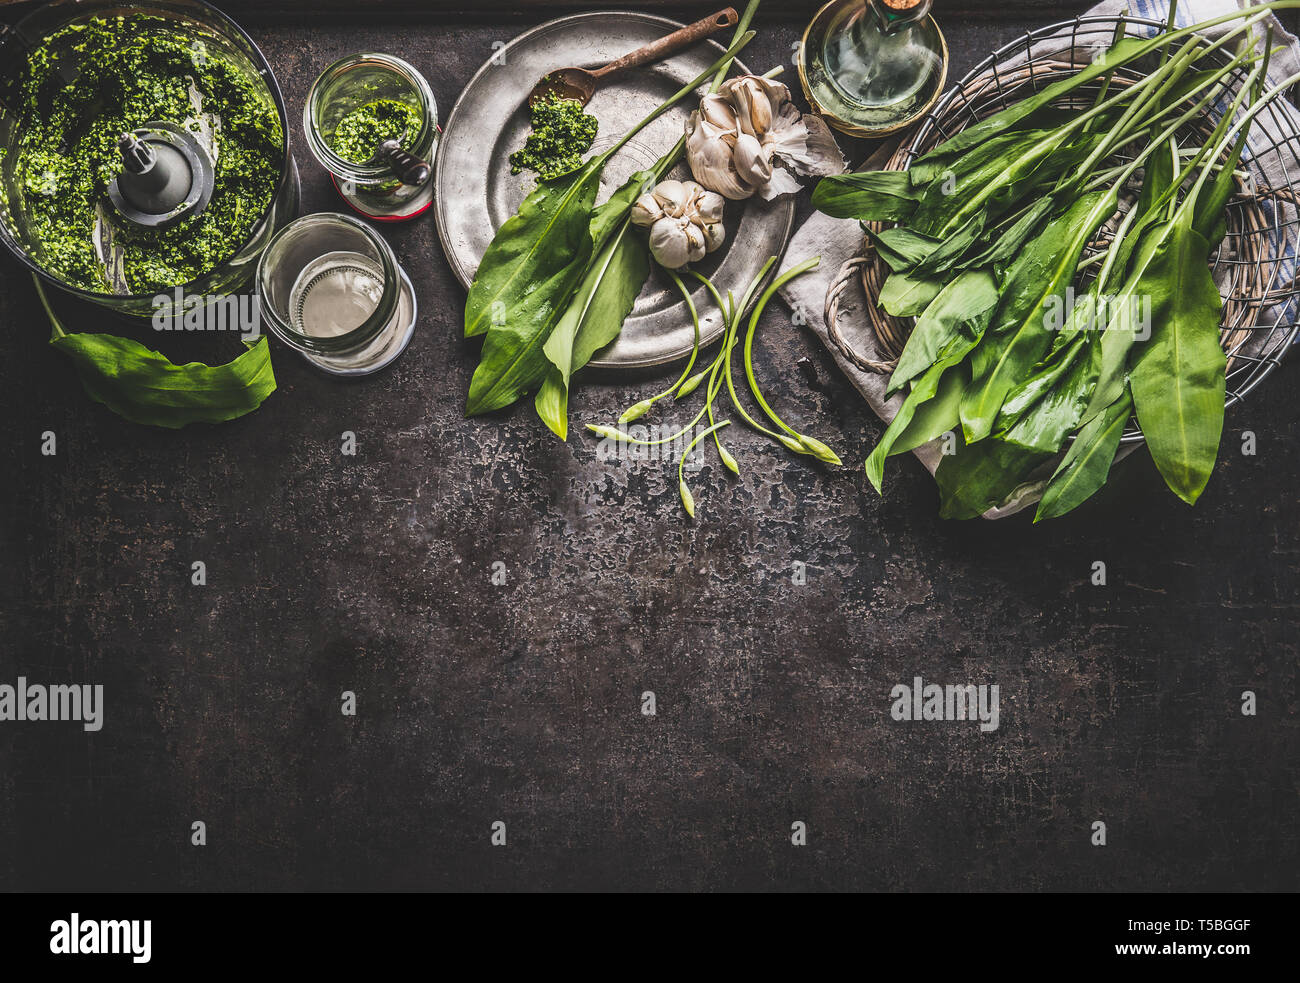 Ramson, aglio selvatico, pesto con ingredienti on dark cucina rustica sfondo tabella, vista dall'alto, di confine. Copia dello spazio per il vostro design, testo o ricette. Sp Foto Stock